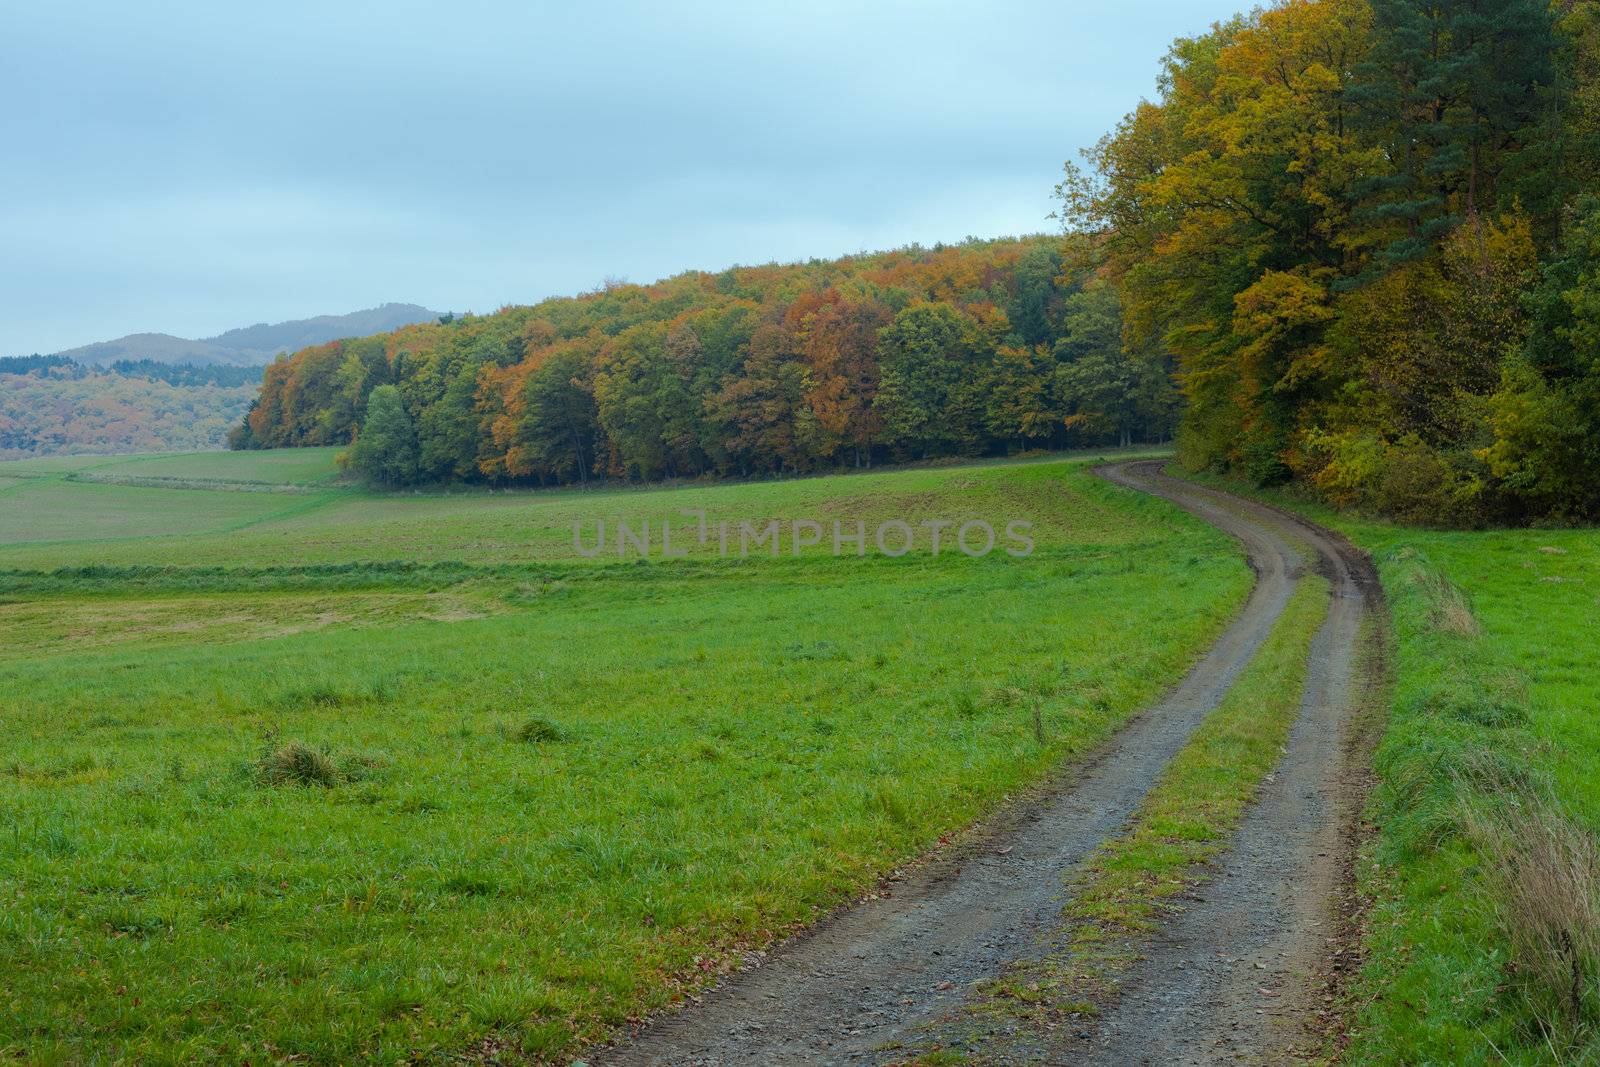 Eifel Landscape, Germany by PiLens